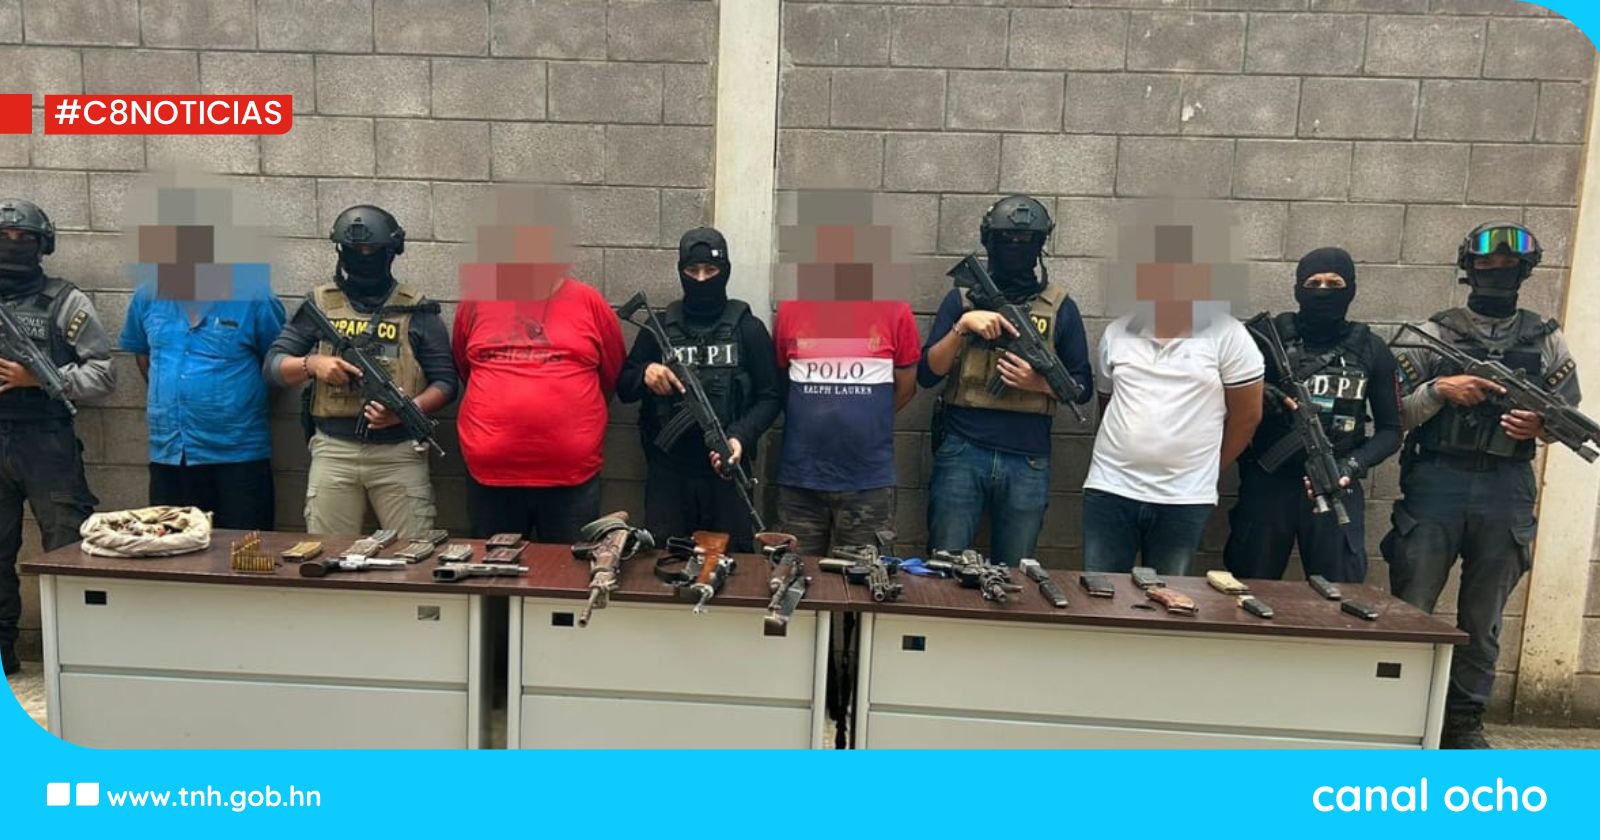 Policía Nacional desarticula banda delictiva «Los Carias» en San Esteban, Olancho